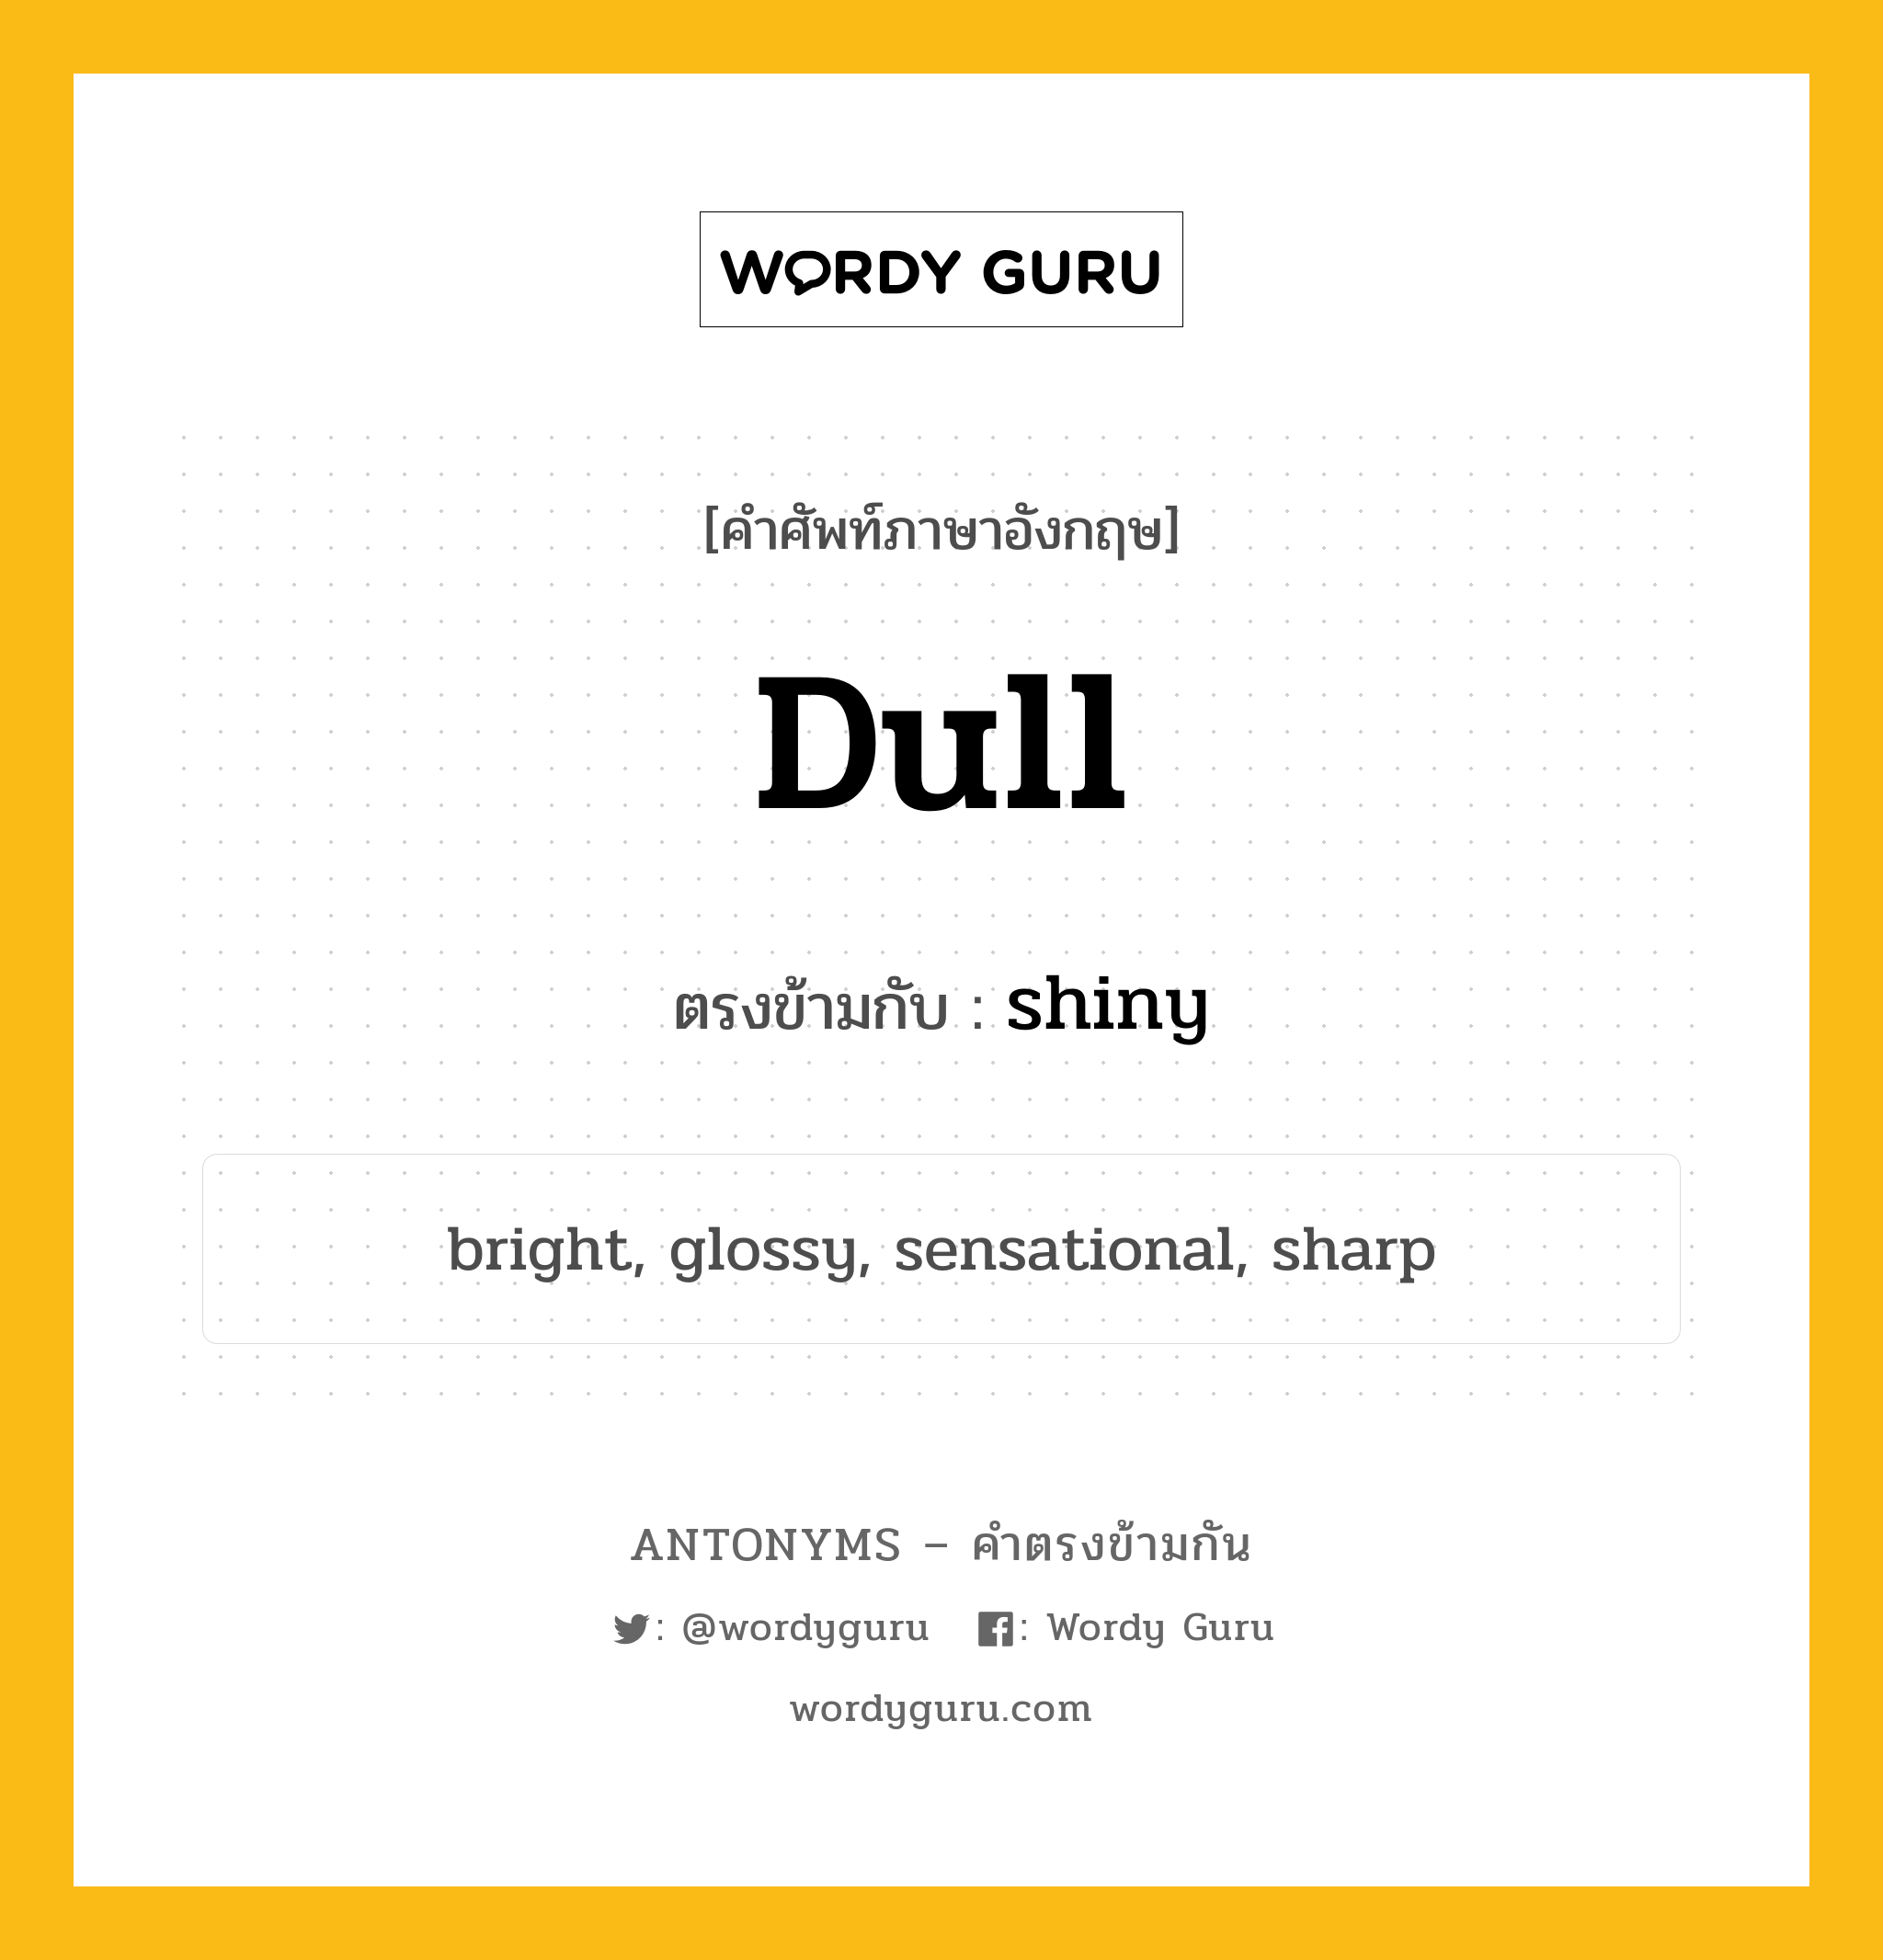 dull เป็นคำตรงข้ามกับคำไหนบ้าง?, คำศัพท์ภาษาอังกฤษที่มีความหมายตรงข้ามกัน dull ตรงข้ามกับ shiny หมวด shiny